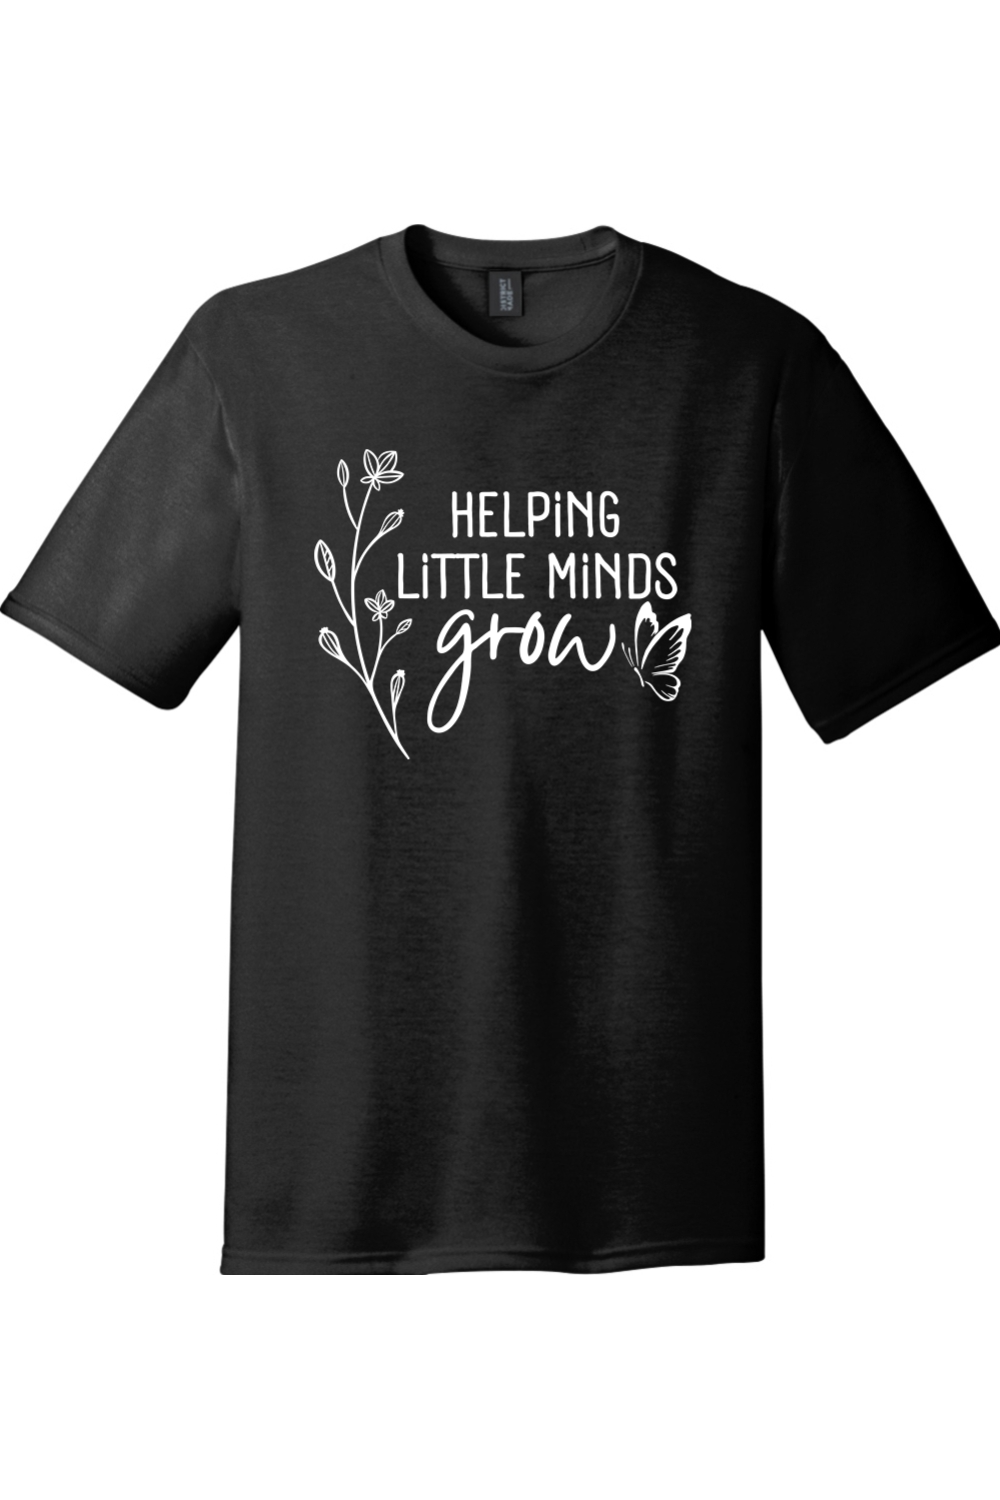 Helping Little Minds Grow | Premium Tri-Blend T-Shirt